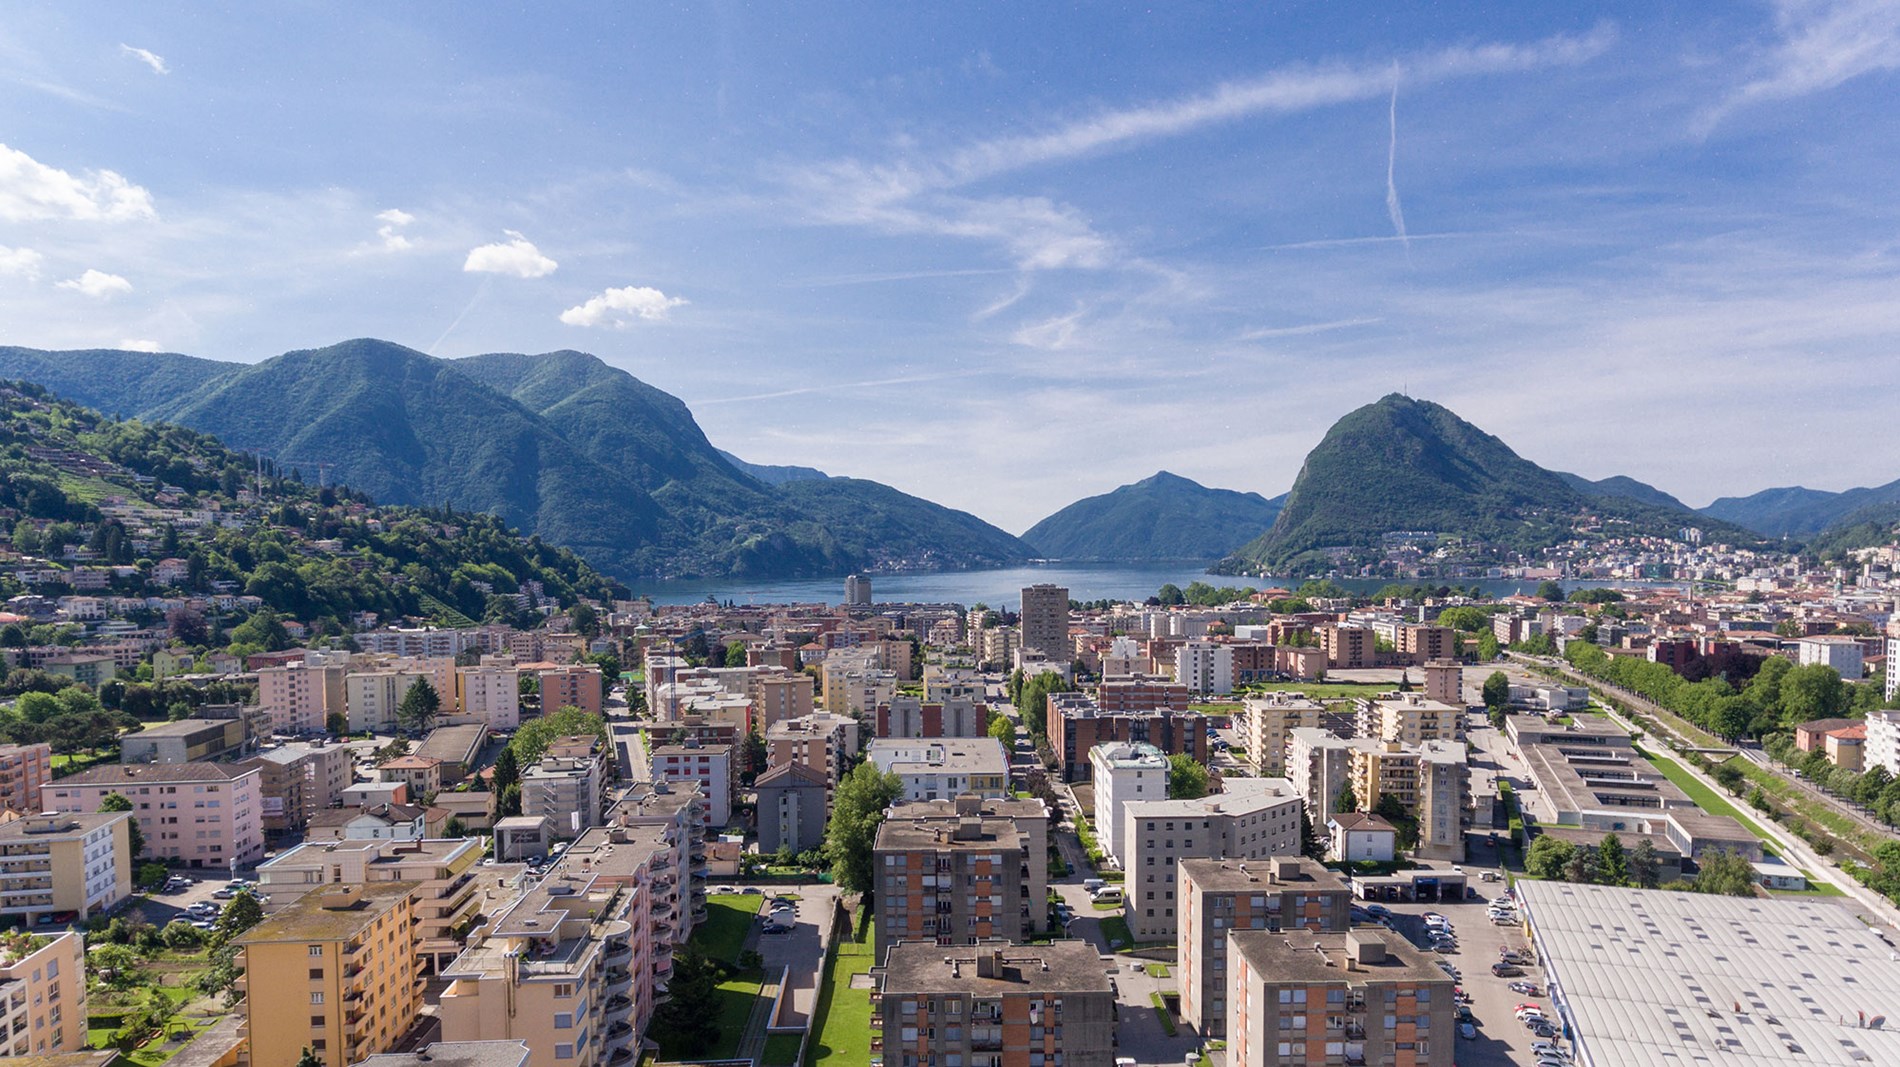 3 locali ammobiliati a Lugano